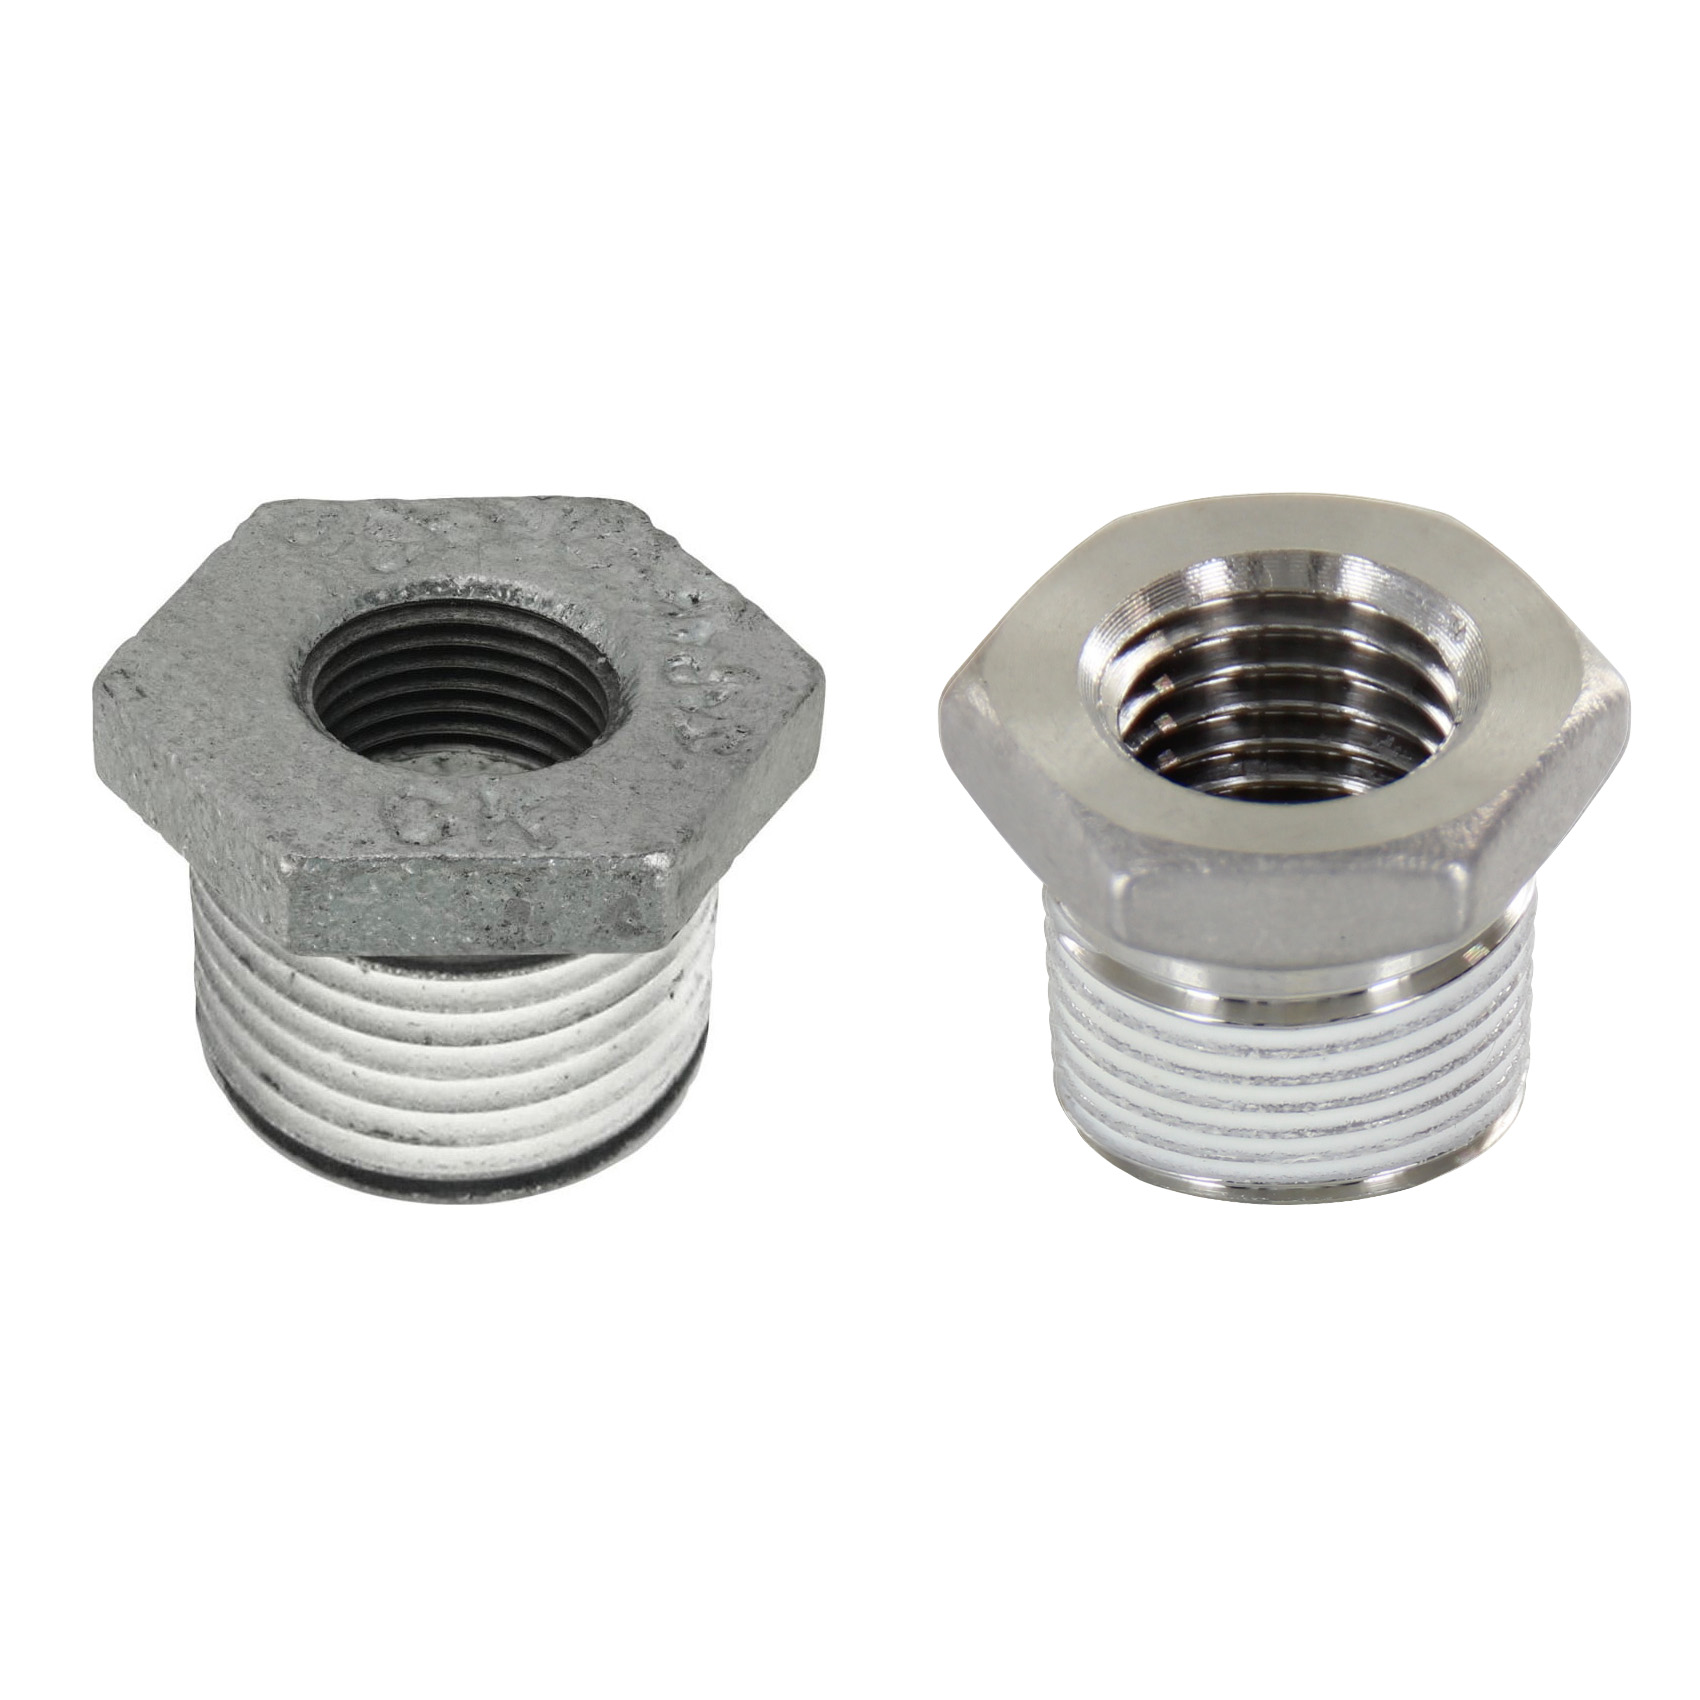 Low Pressure Screw Fittings - Thread Coated Type - Steel Pipe Fittings - Bushings (SUCPB13) 